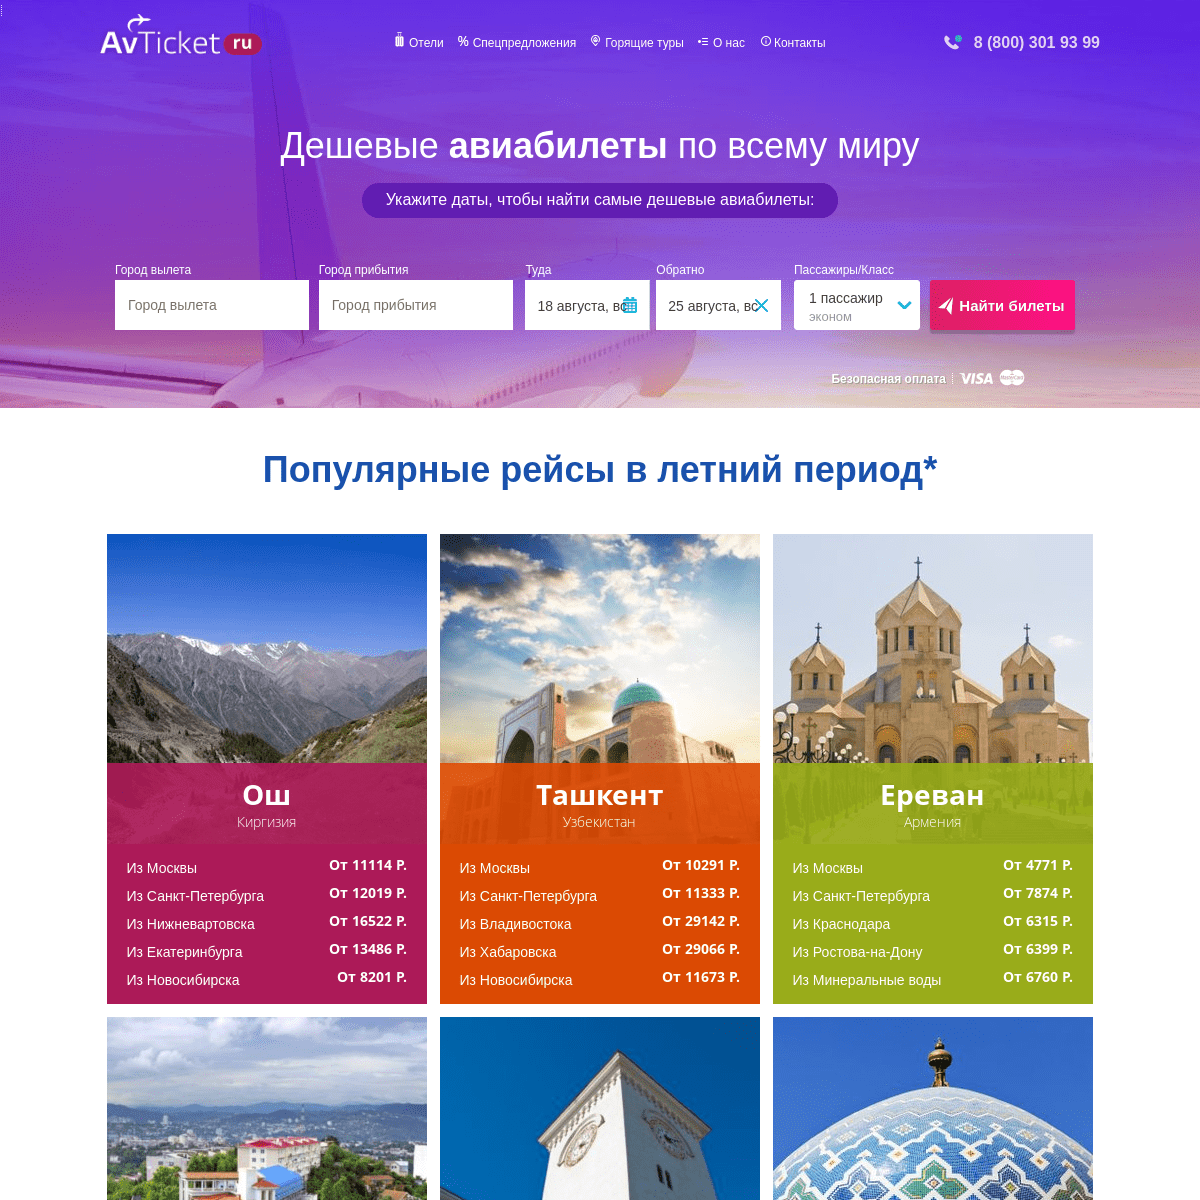 Дешёвые авиабилеты, цены на прямые рейсы - официальный сайт Avticket.Ru